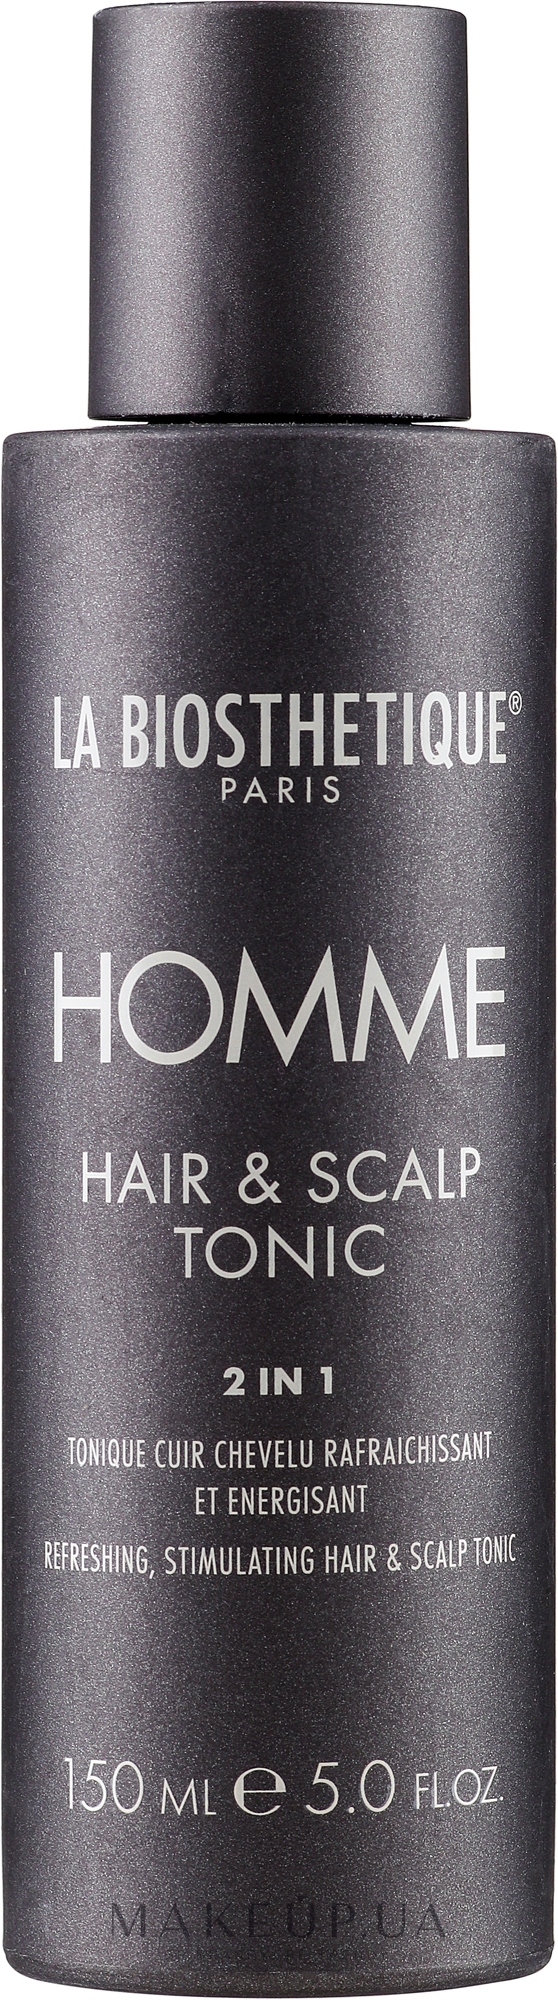 Стимулирующий лосьон для кожи головы - La Biosthetique Homme Hair & Scalp Tonic  — фото 150ml